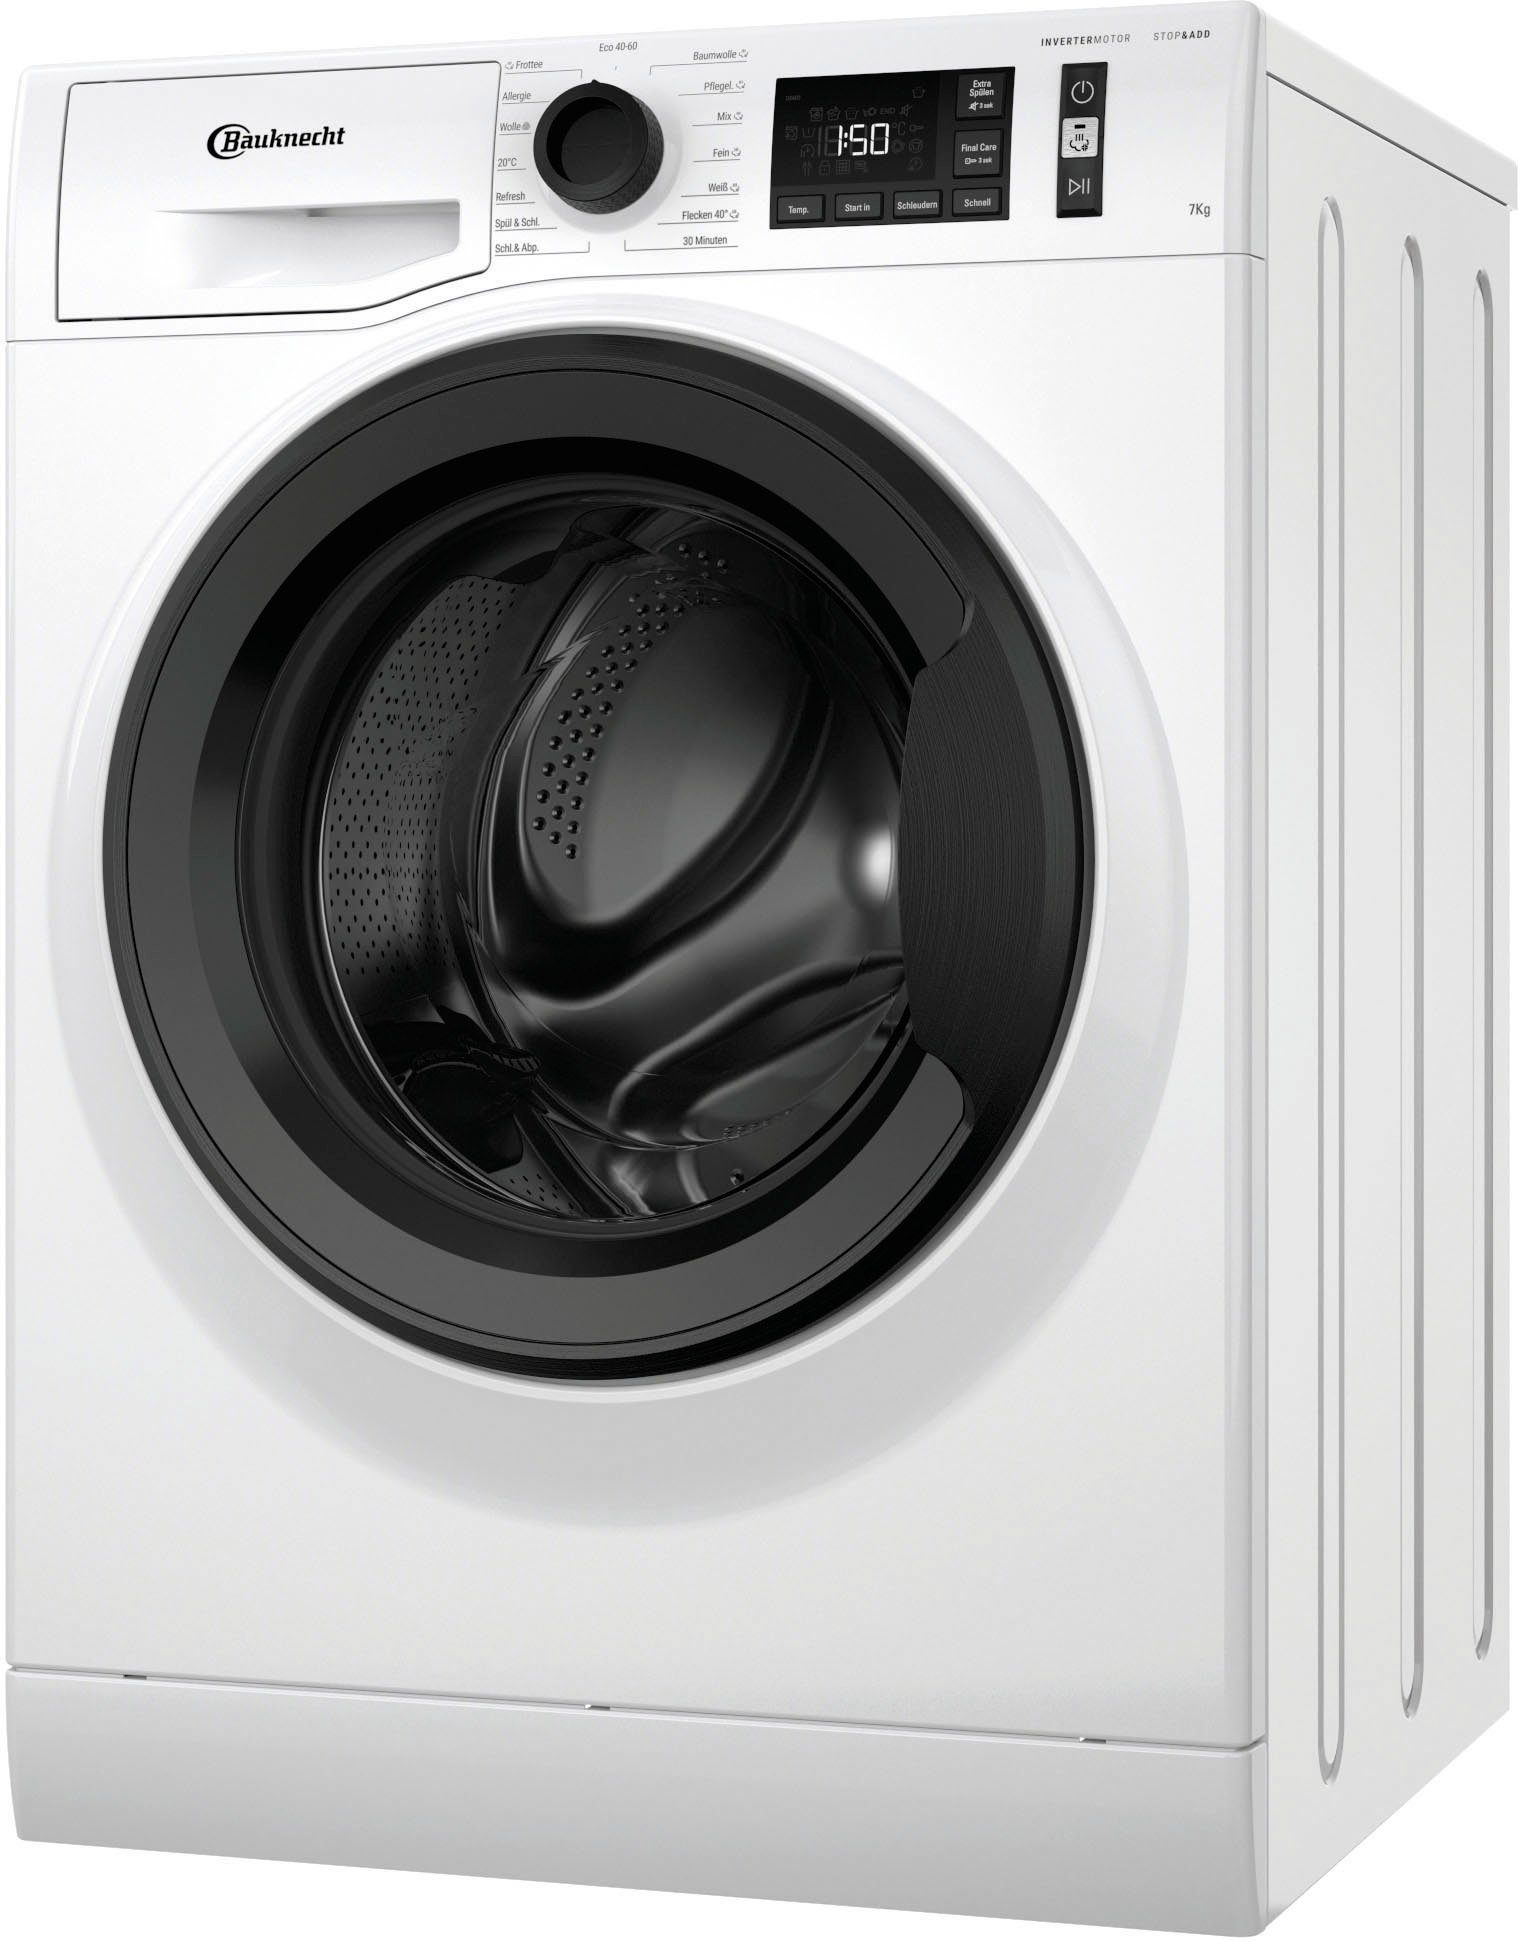 BAUKNECHT Waschmaschine WM Elite 711 C, 7 kg, 1400 U/min online kaufen |  OTTO